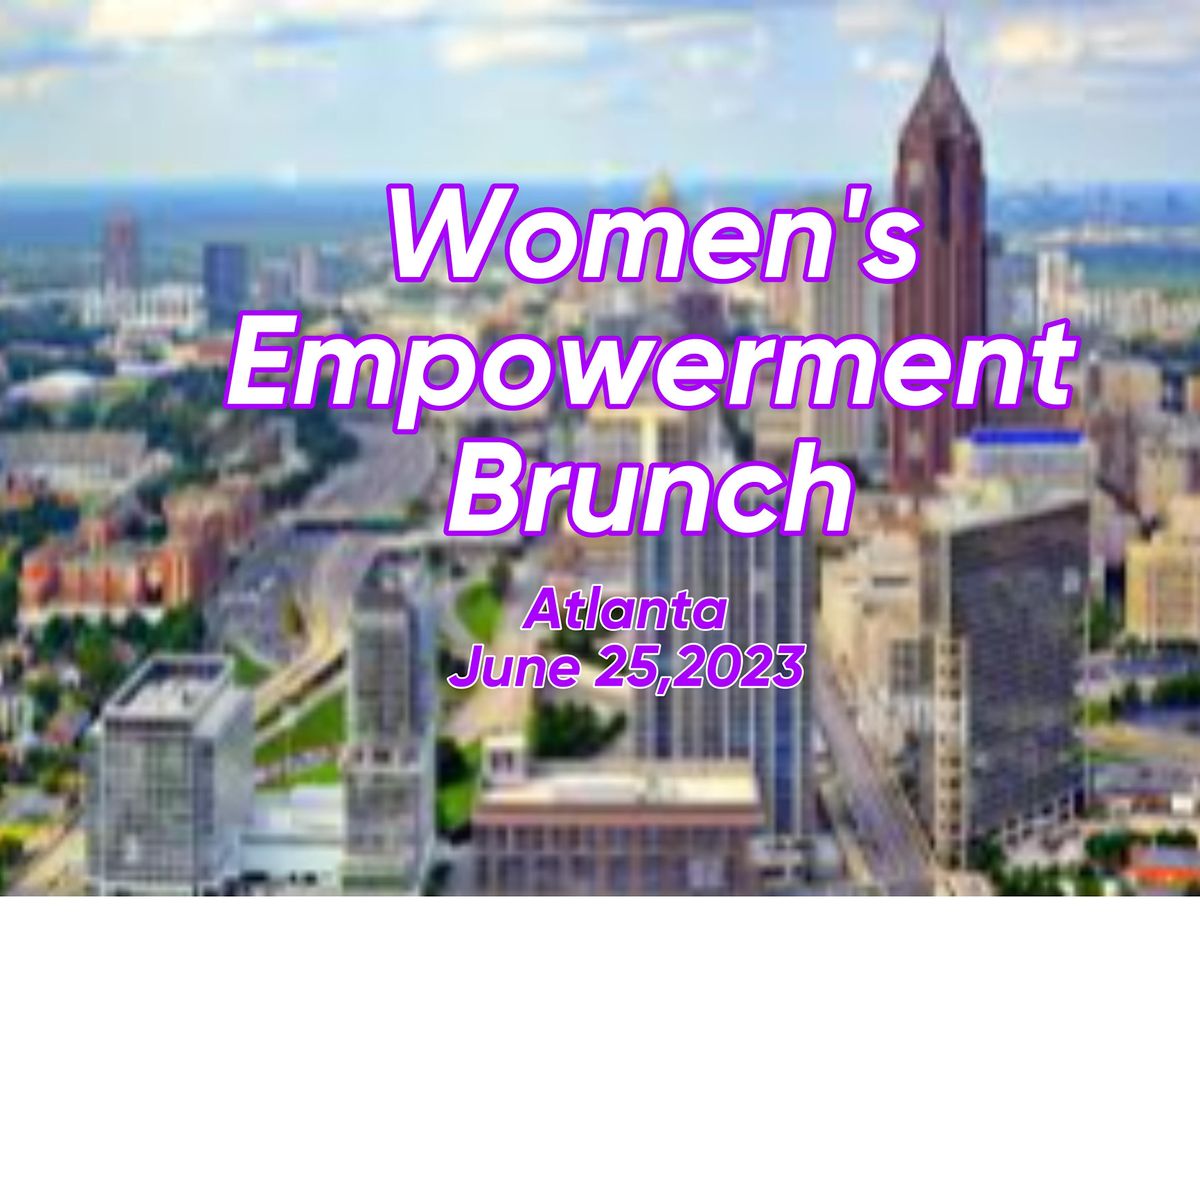 Women's Empowerment Brunch & Network Mixer